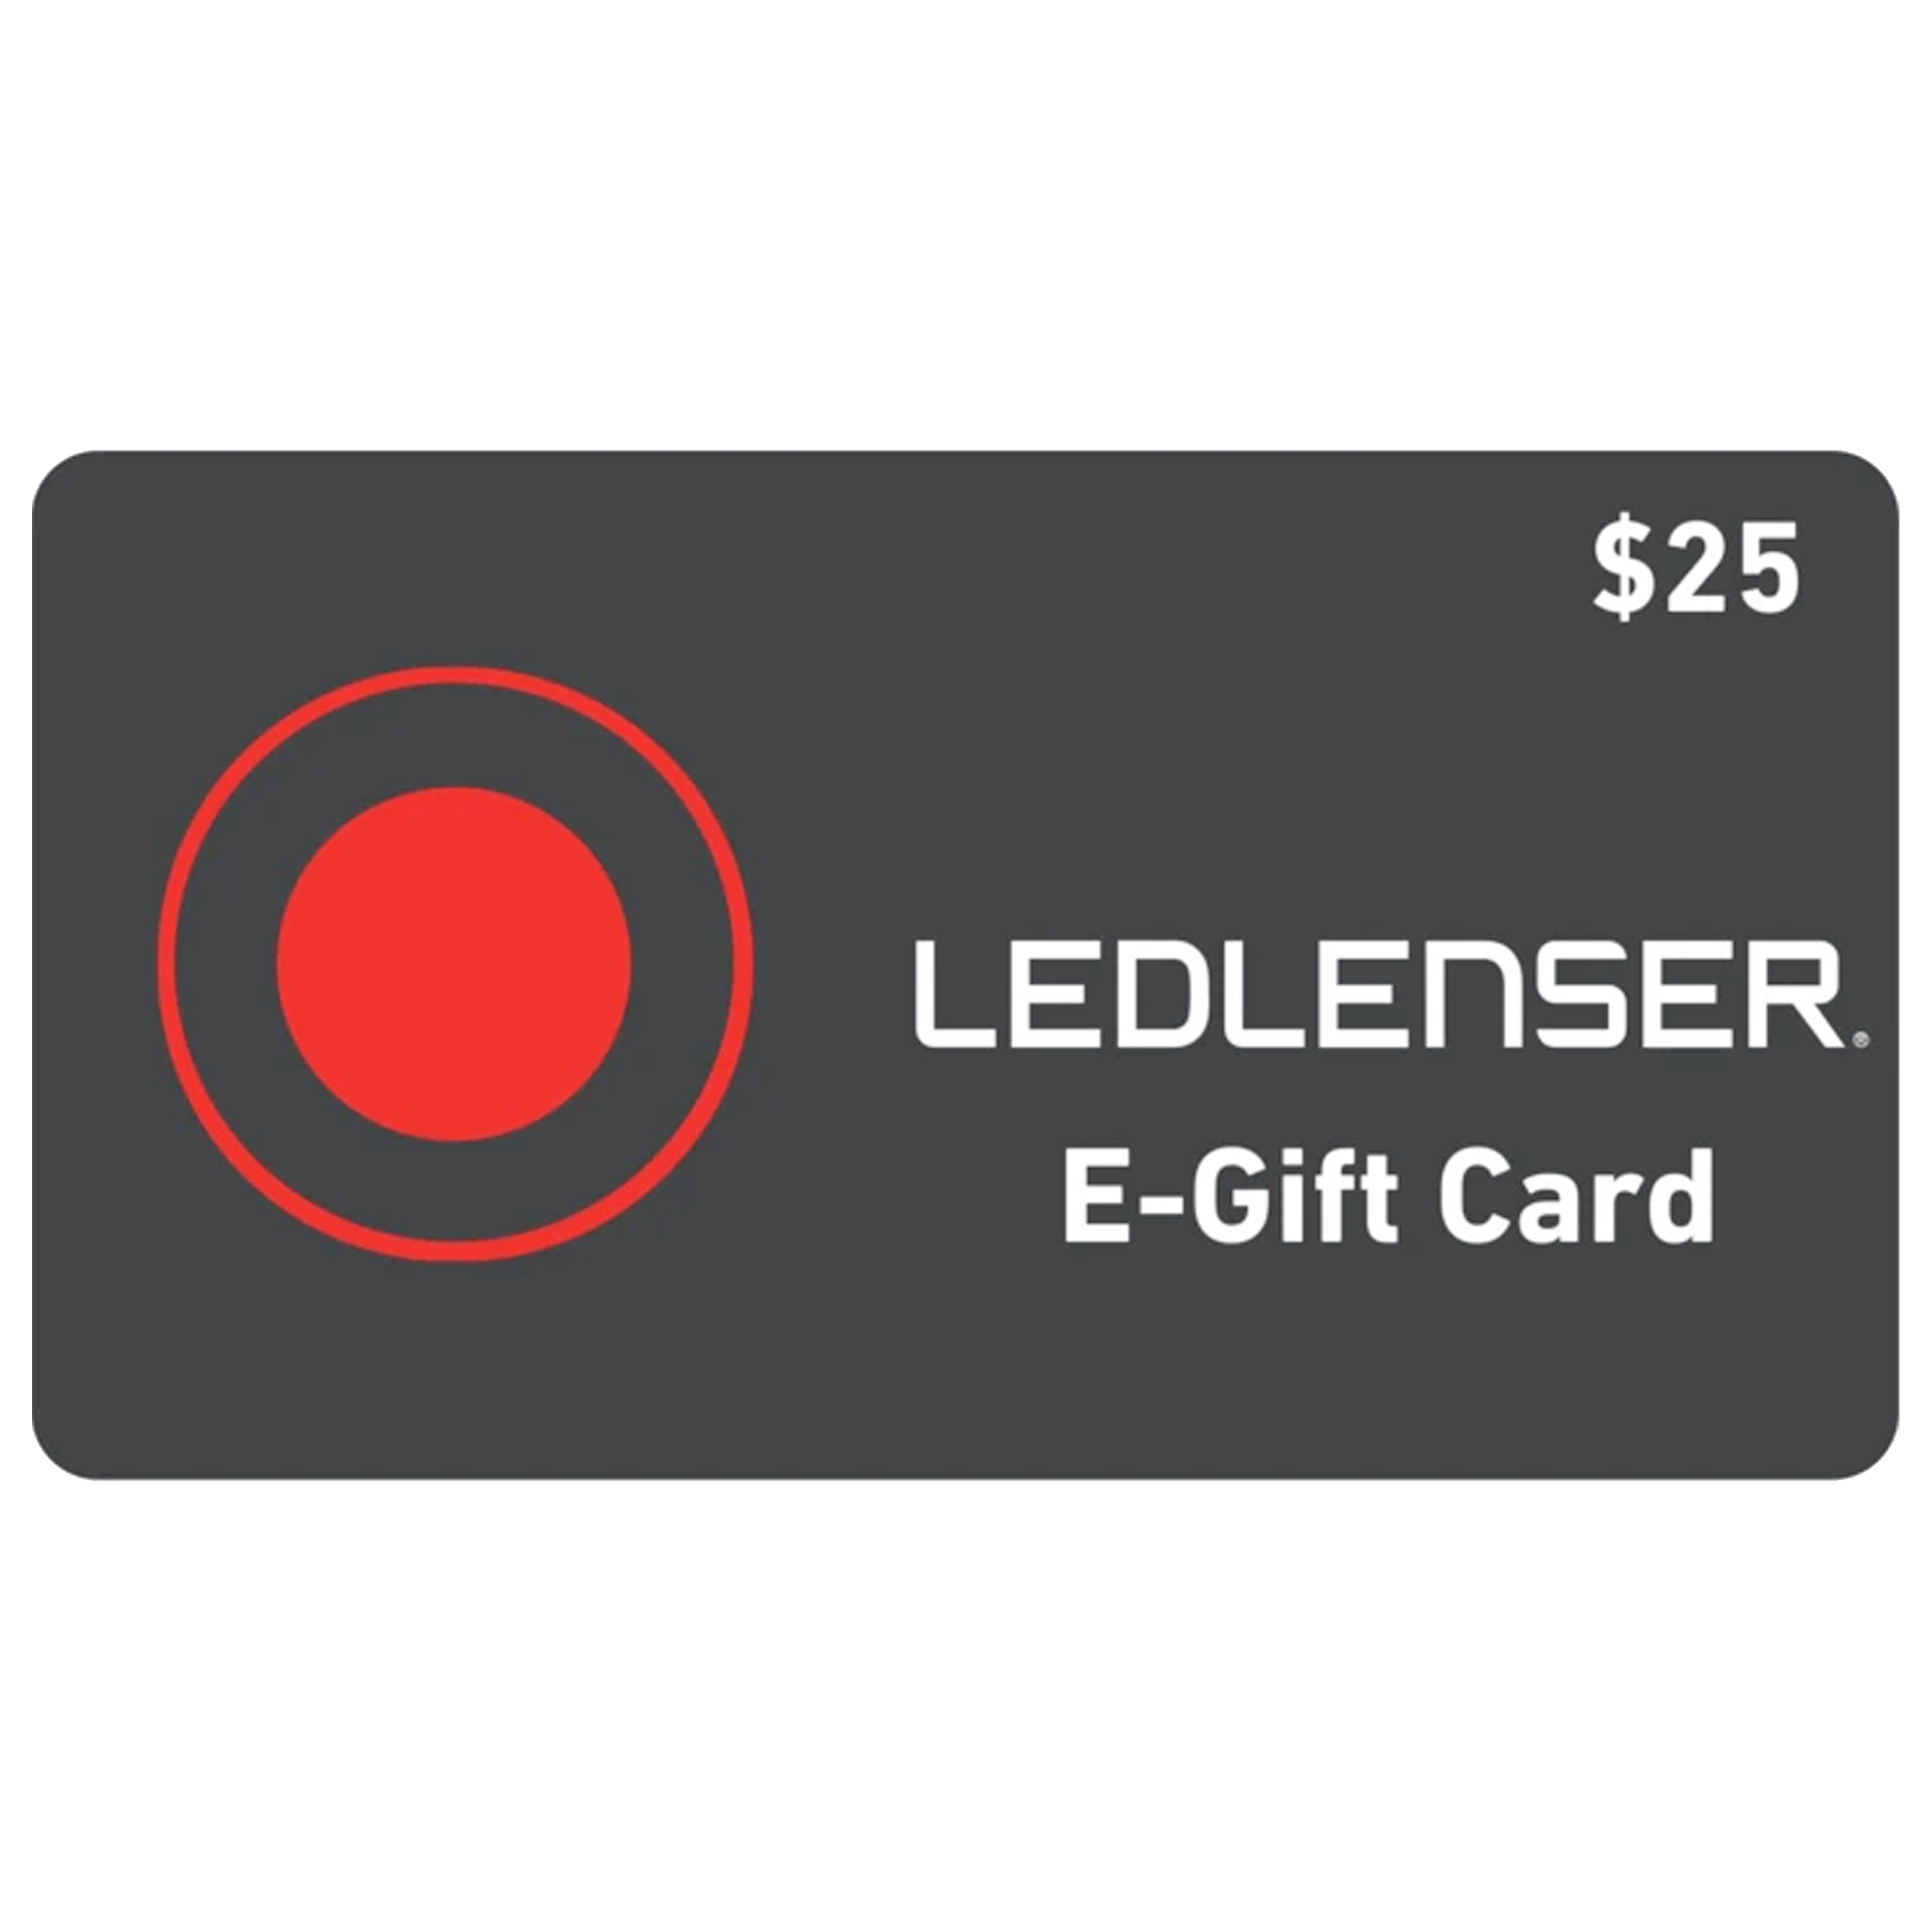 Ledlenser Gift Card - $25